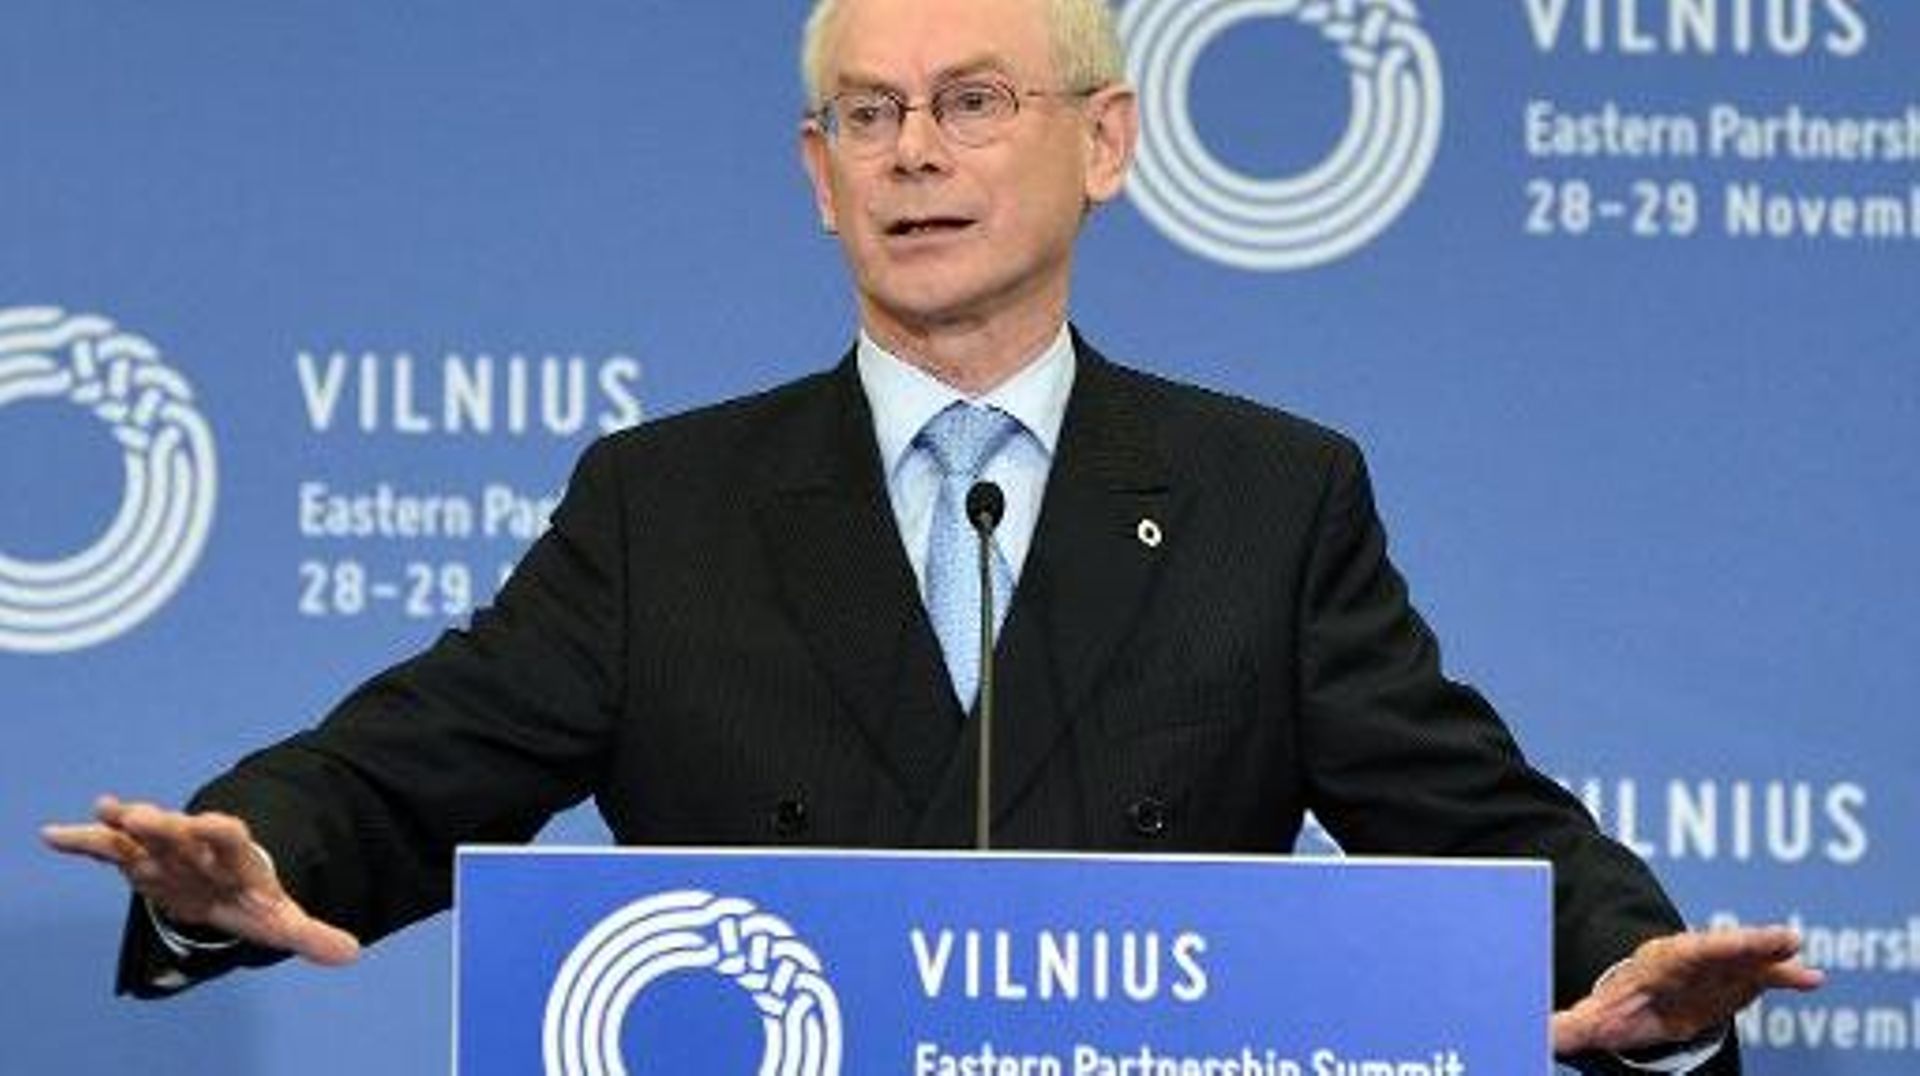 Le président du Conseil européen, Herman Van Rompuy, à Vilnius le 29 novembre 2013